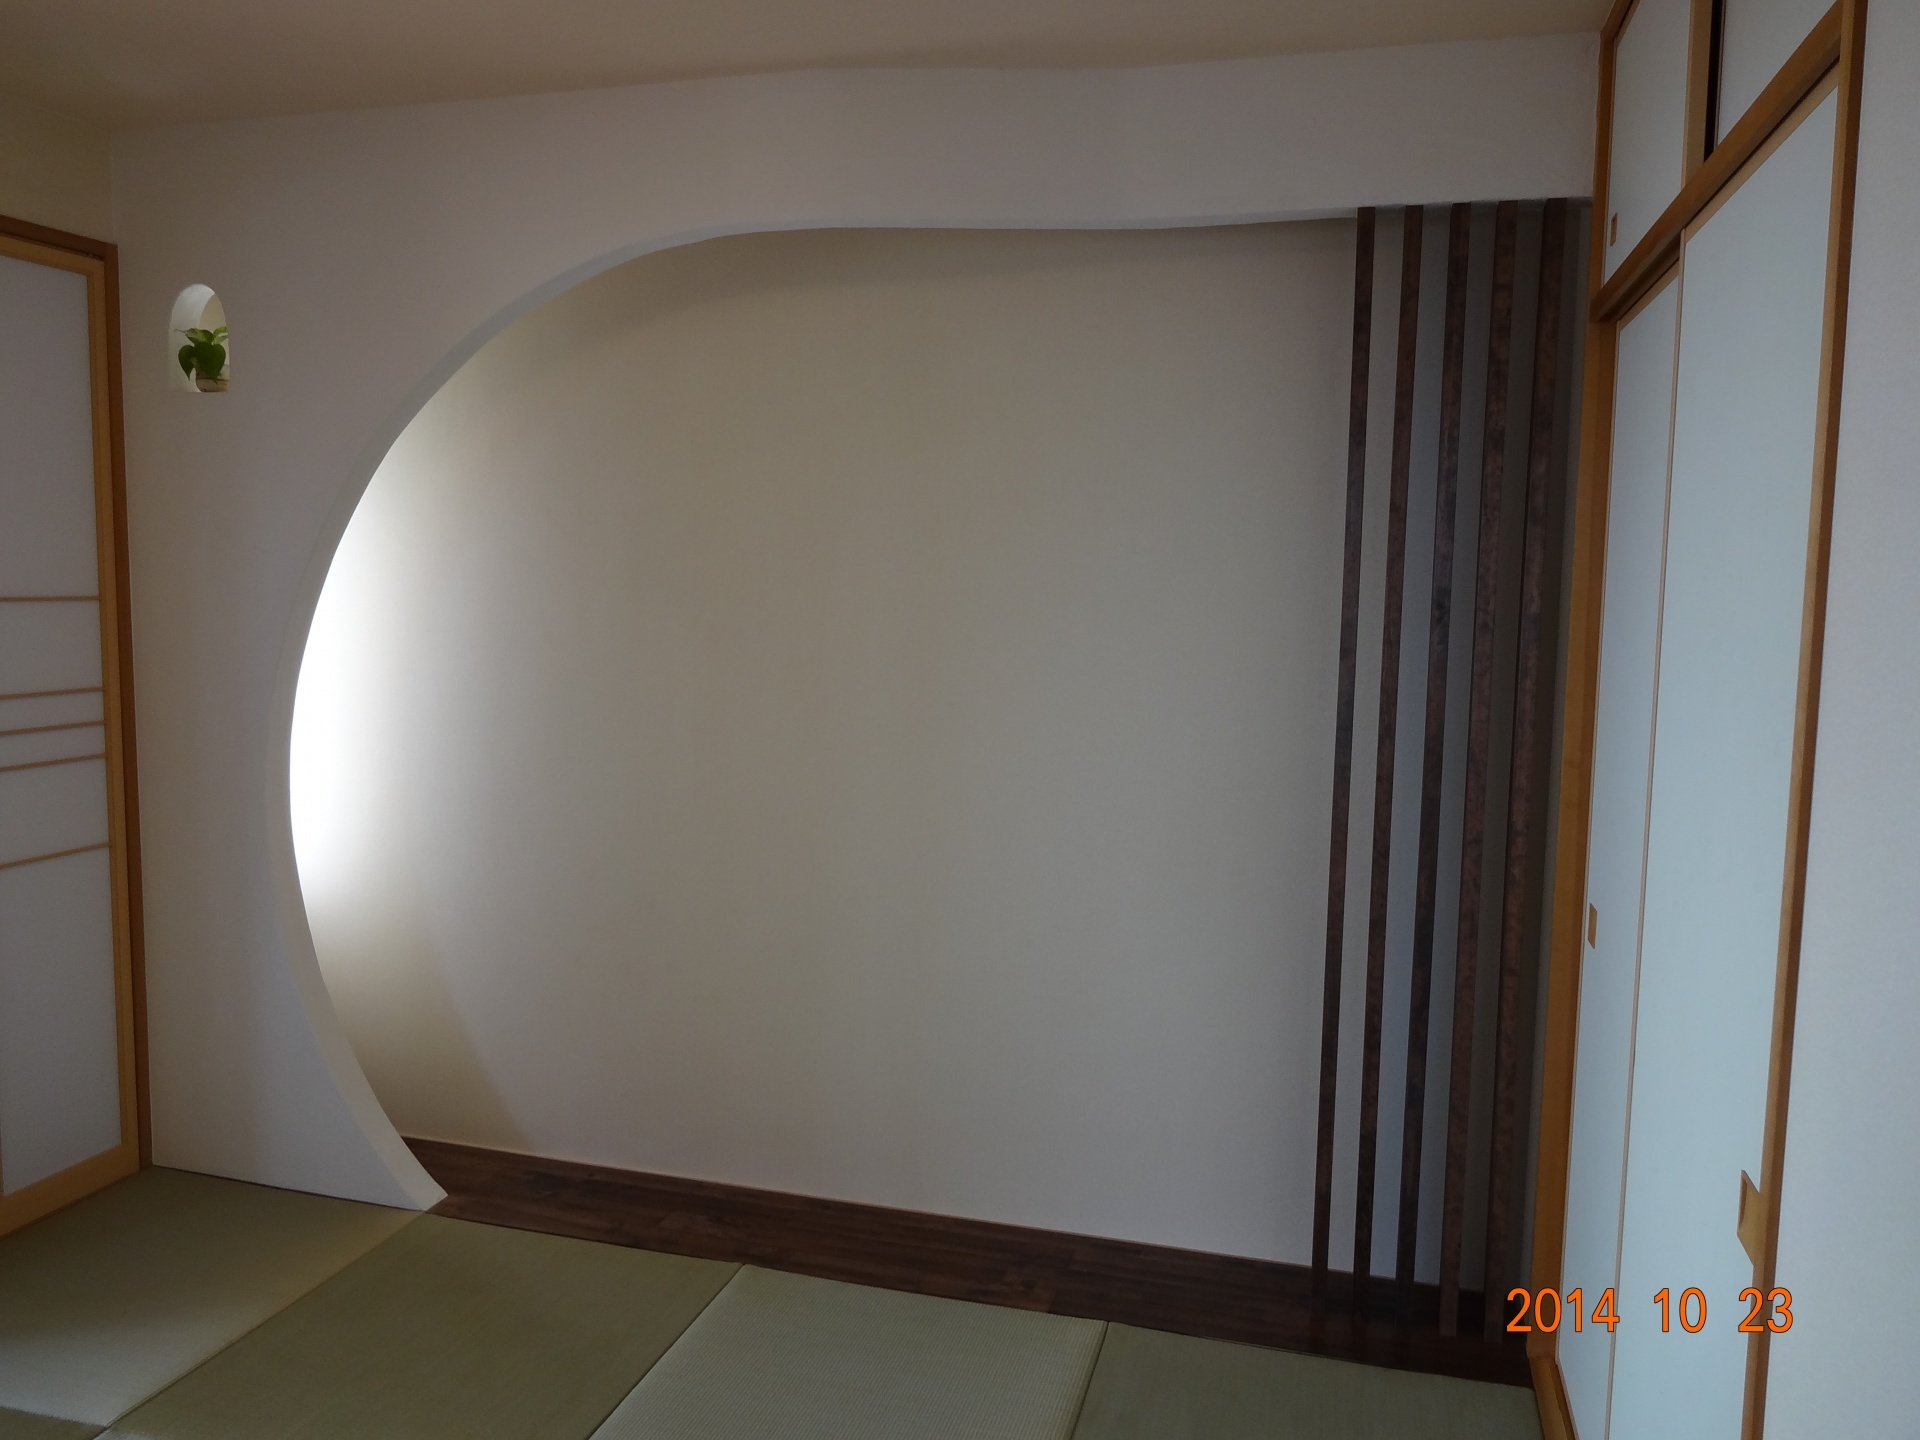 お洒落な飾り床 大阪府茨木市で自然素材の注文住宅のご相談はエッグ住まいる工房へ